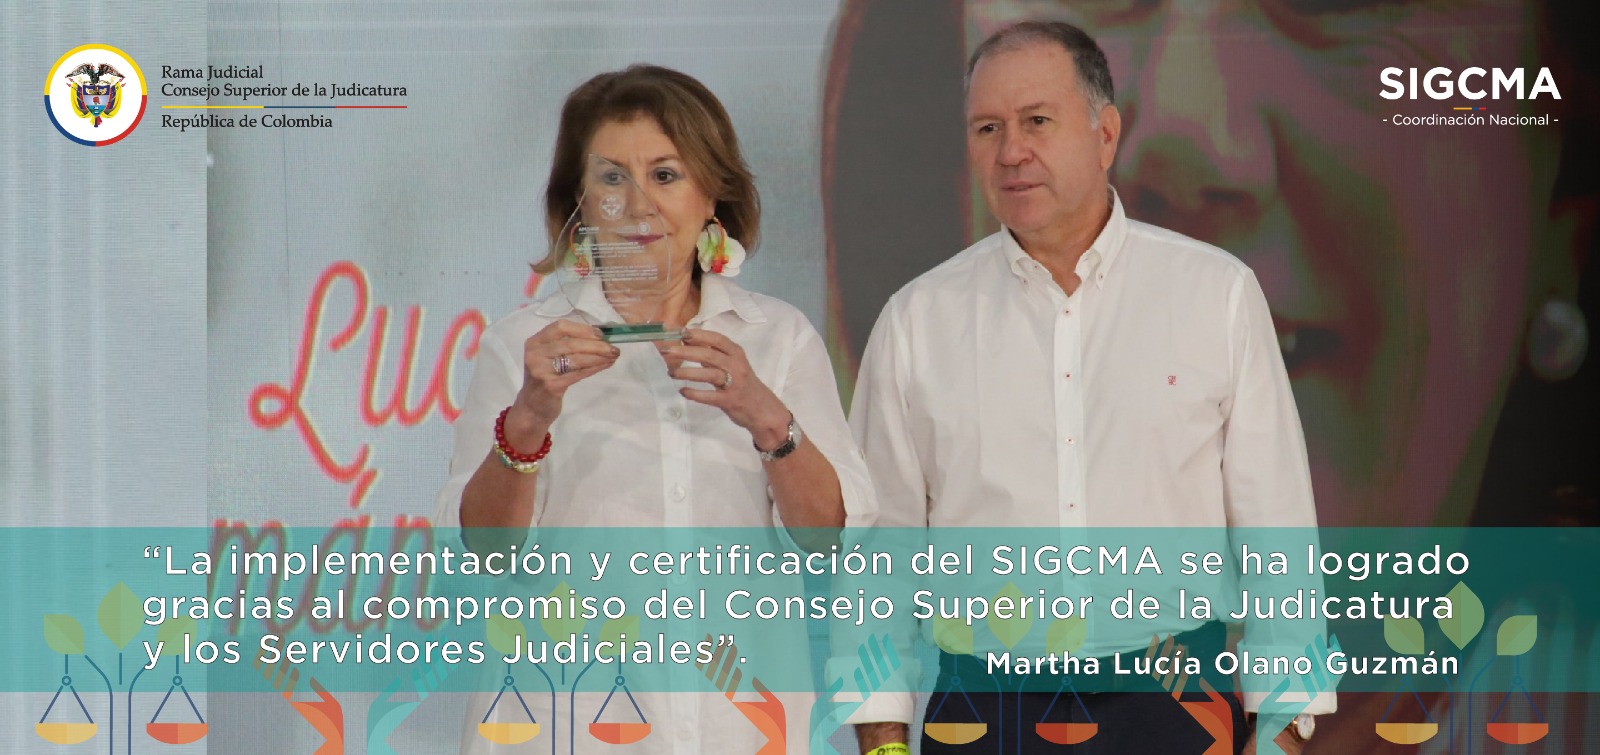 “Implementación y certificación del SIGCMA en 1250 sedes judiciales reflejan el compromiso del Consejo Superior de la Judicatura y los servidores judiciales ”: Vicepresidente Martha Lucía Olano Guzmán